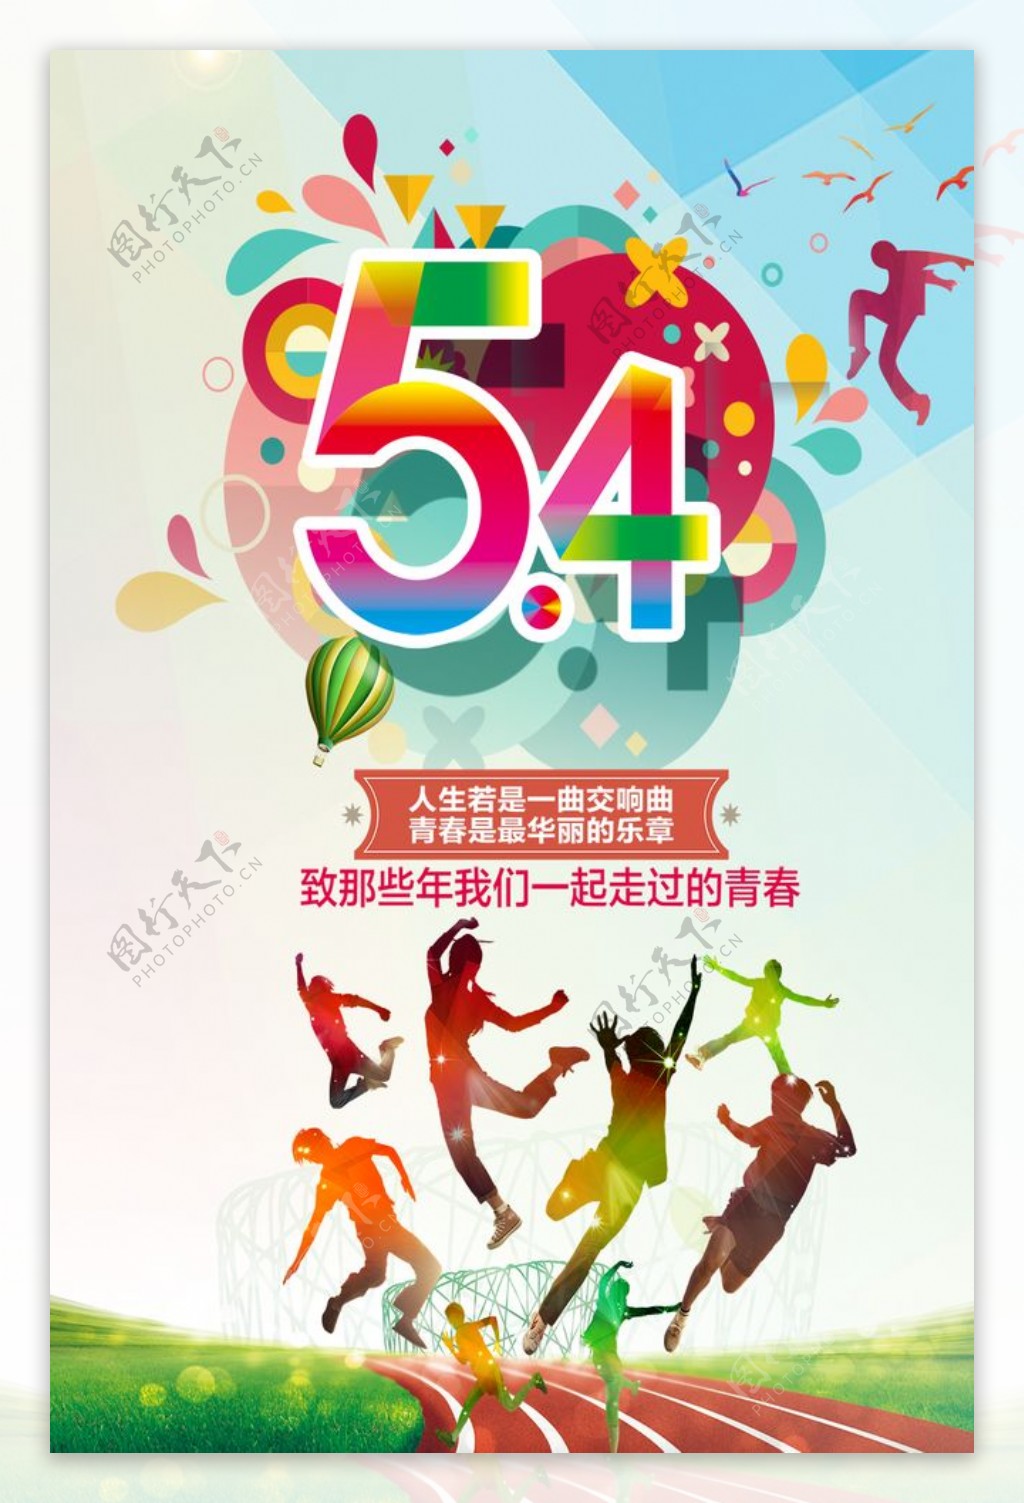 54青年节青年节五四青